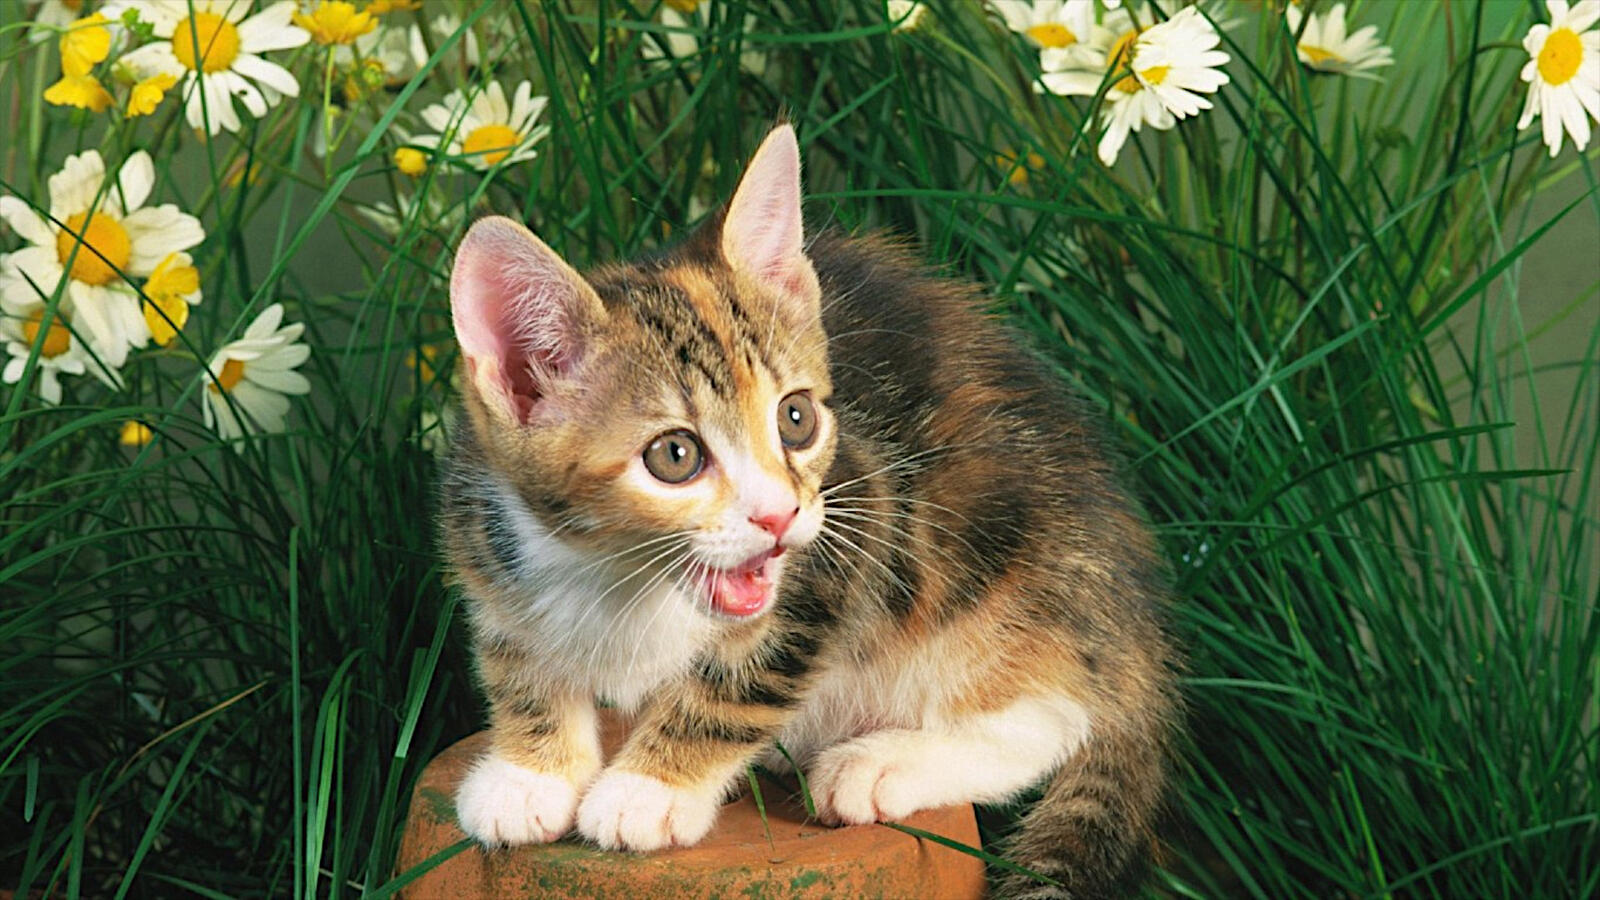 Бесплатное фото Маленький котенок среди зеленой травы с ромашками